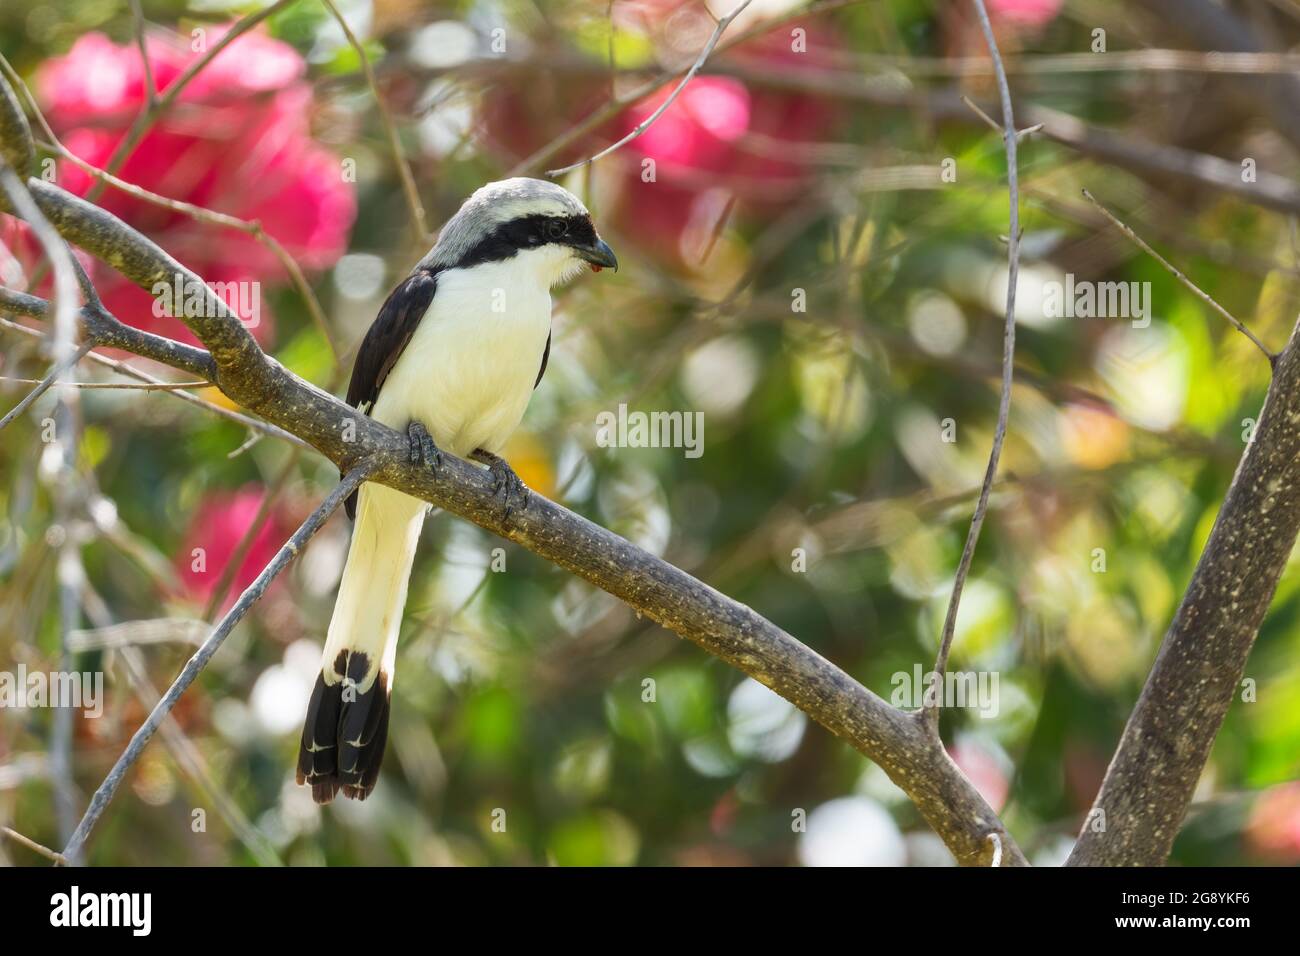 Graurückenvögel - Lanius excubitoroides, schöner großer Barschvögel aus afrikanischen Büschen und Wäldern, See Ziway, Äthiopien. Stockfoto